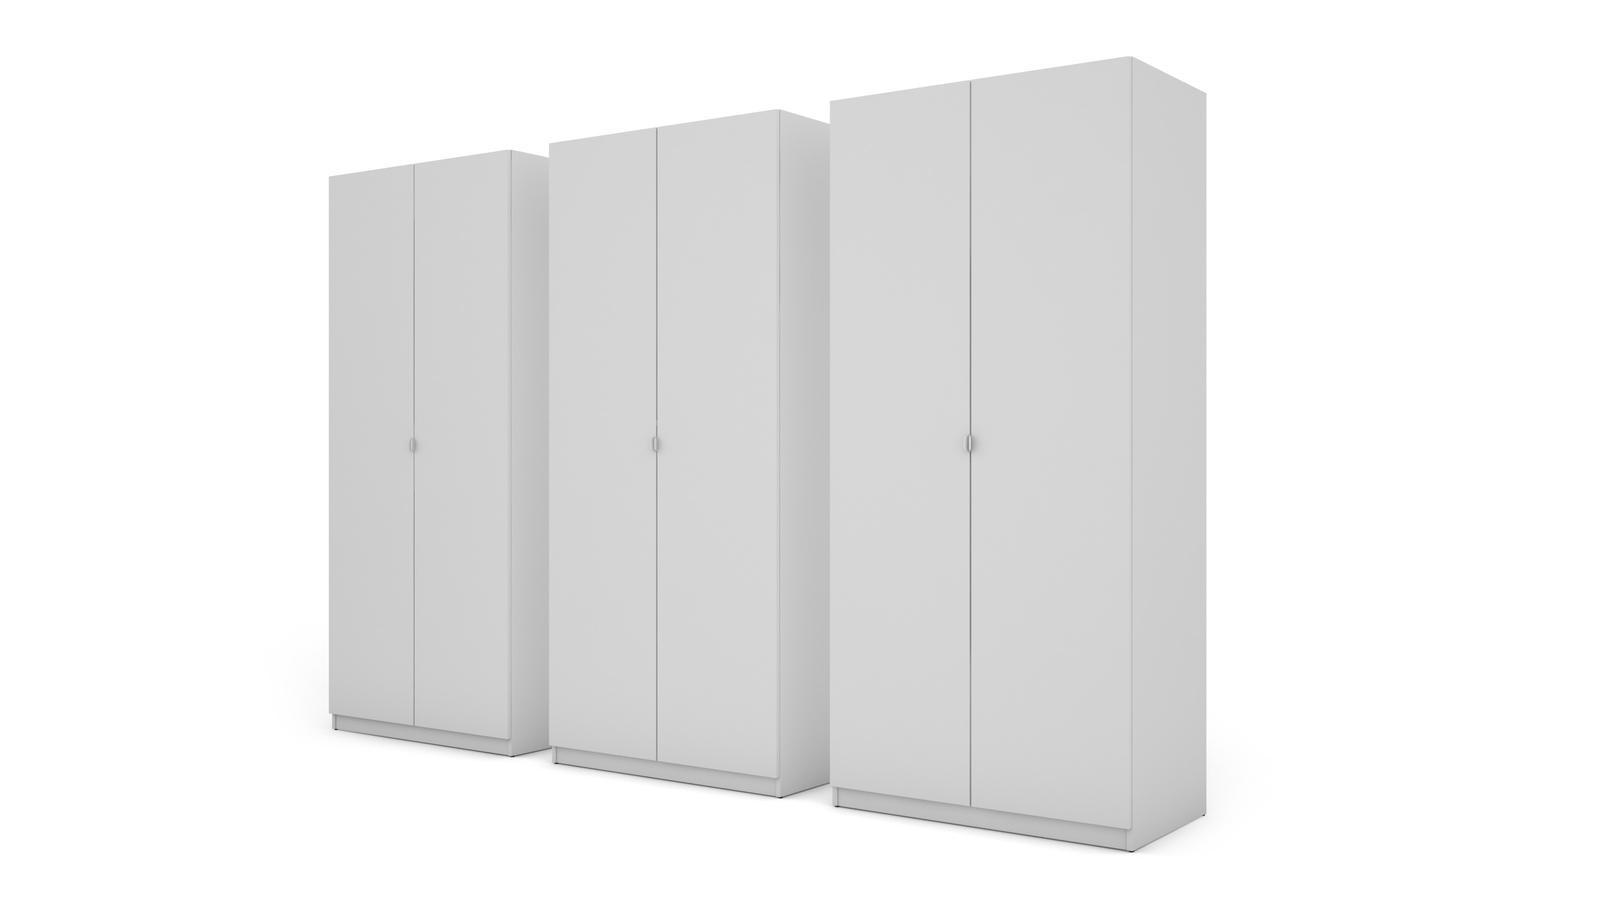 Duża szafa do garderoby XXL szuflady biała 300x220x59 cm  nr. 5